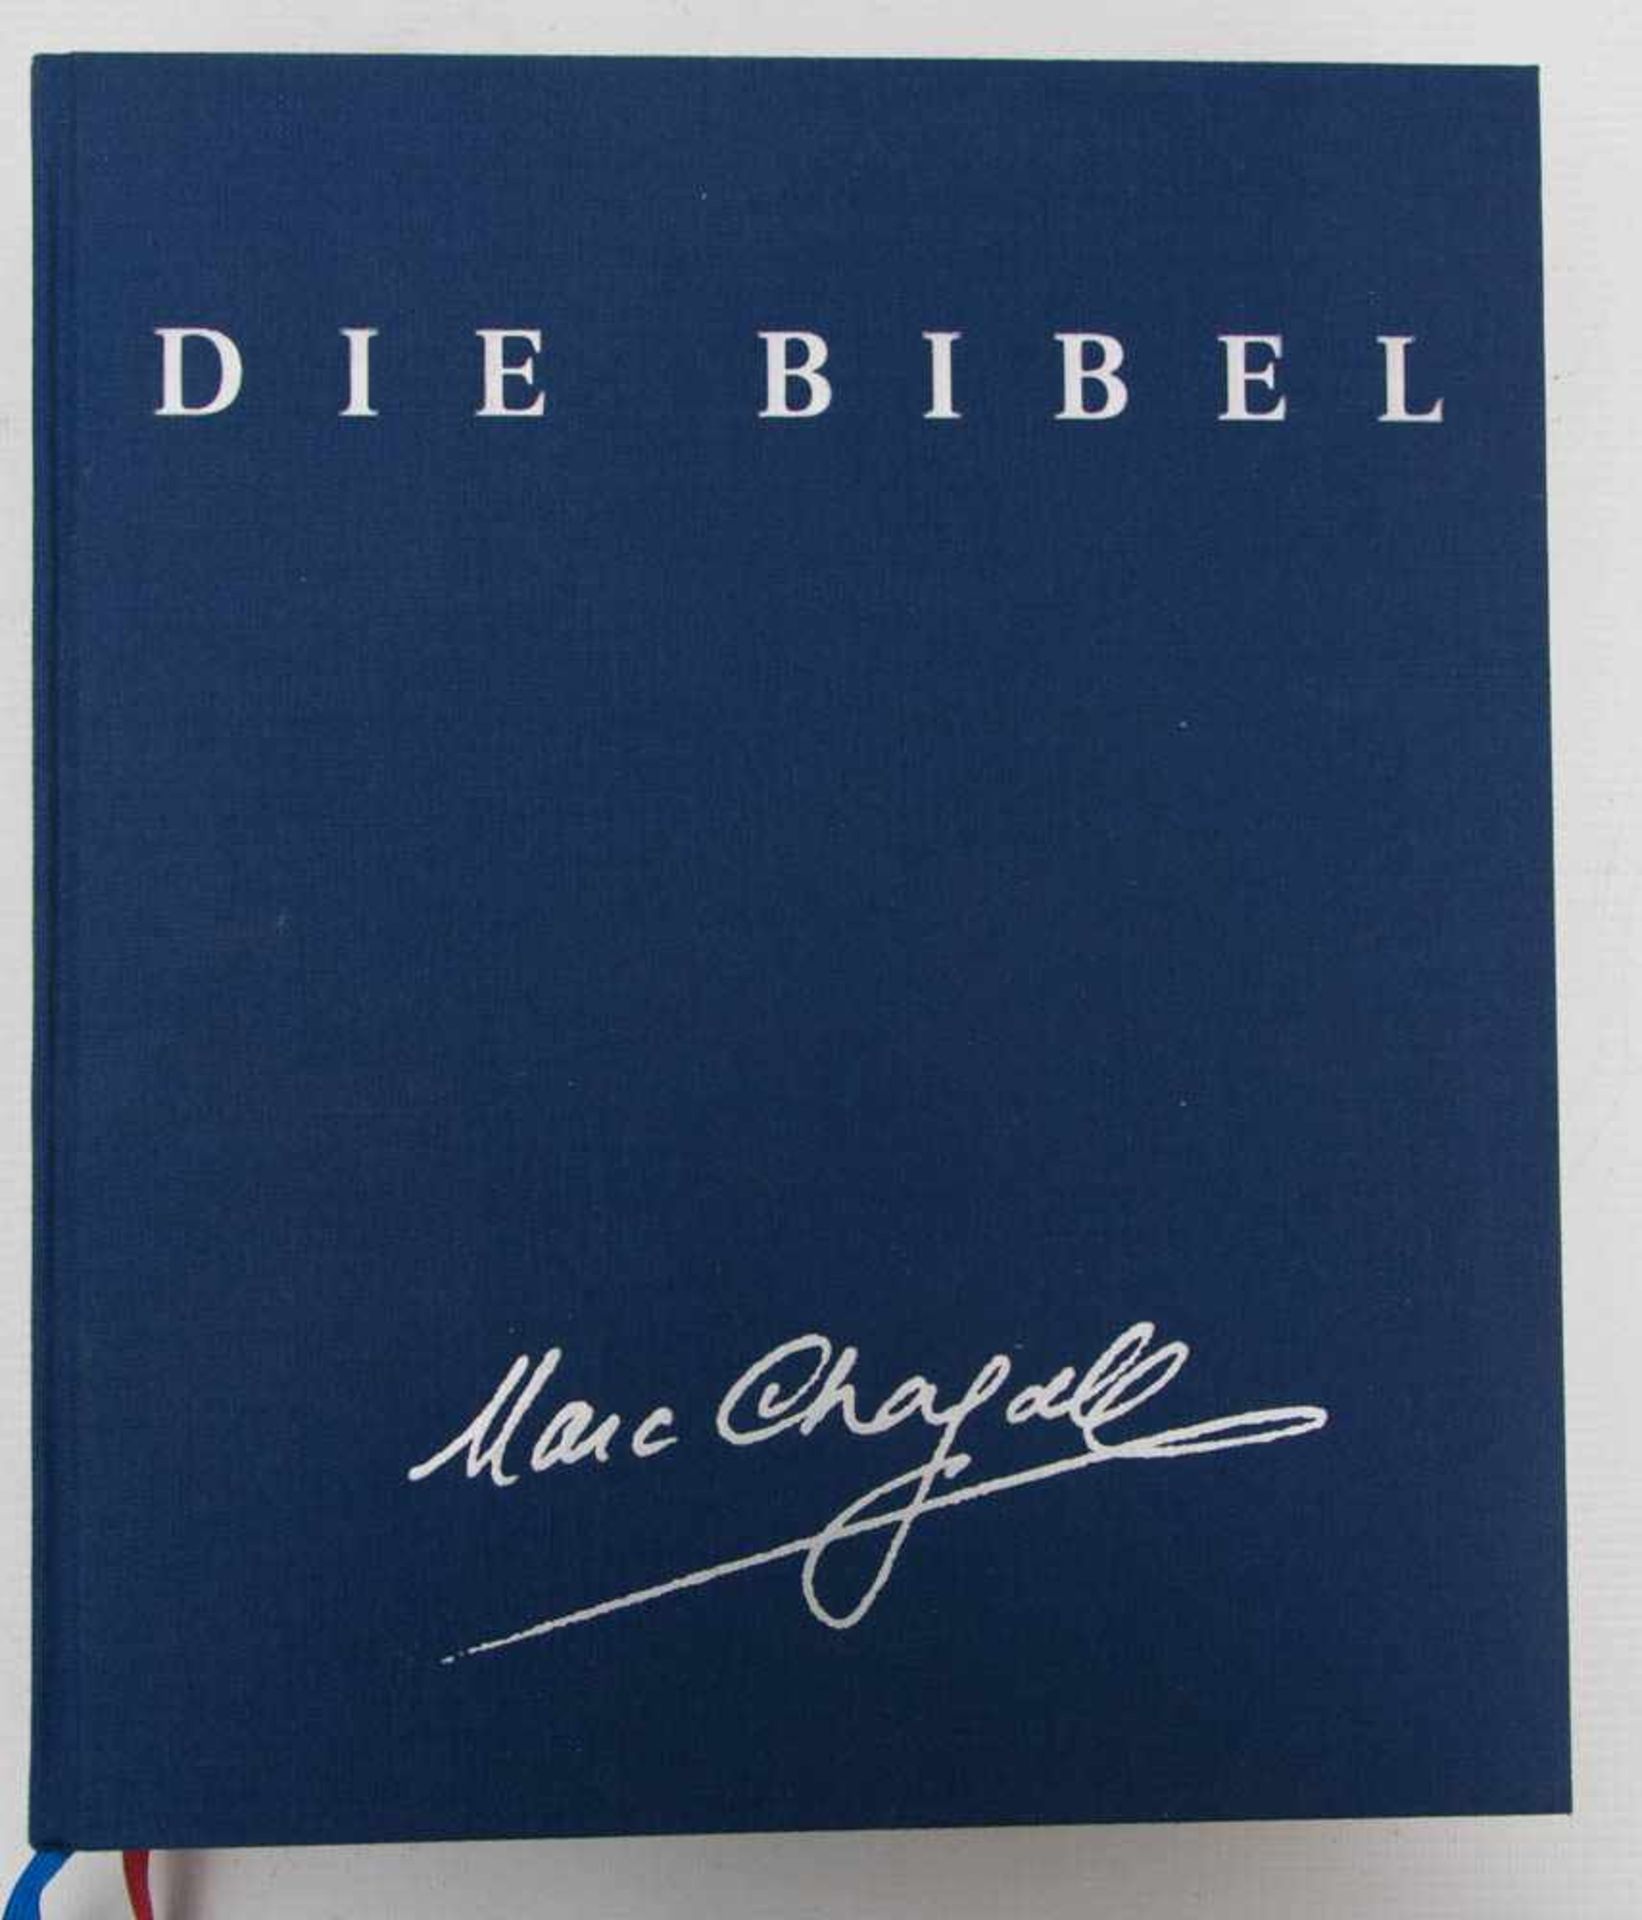 BIBEL MIT BILDERN VON MARC CHAGALL, katholisches Bibwelwerk 1998.Sehr guter Zustand28 x 33 cm - Bild 3 aus 4